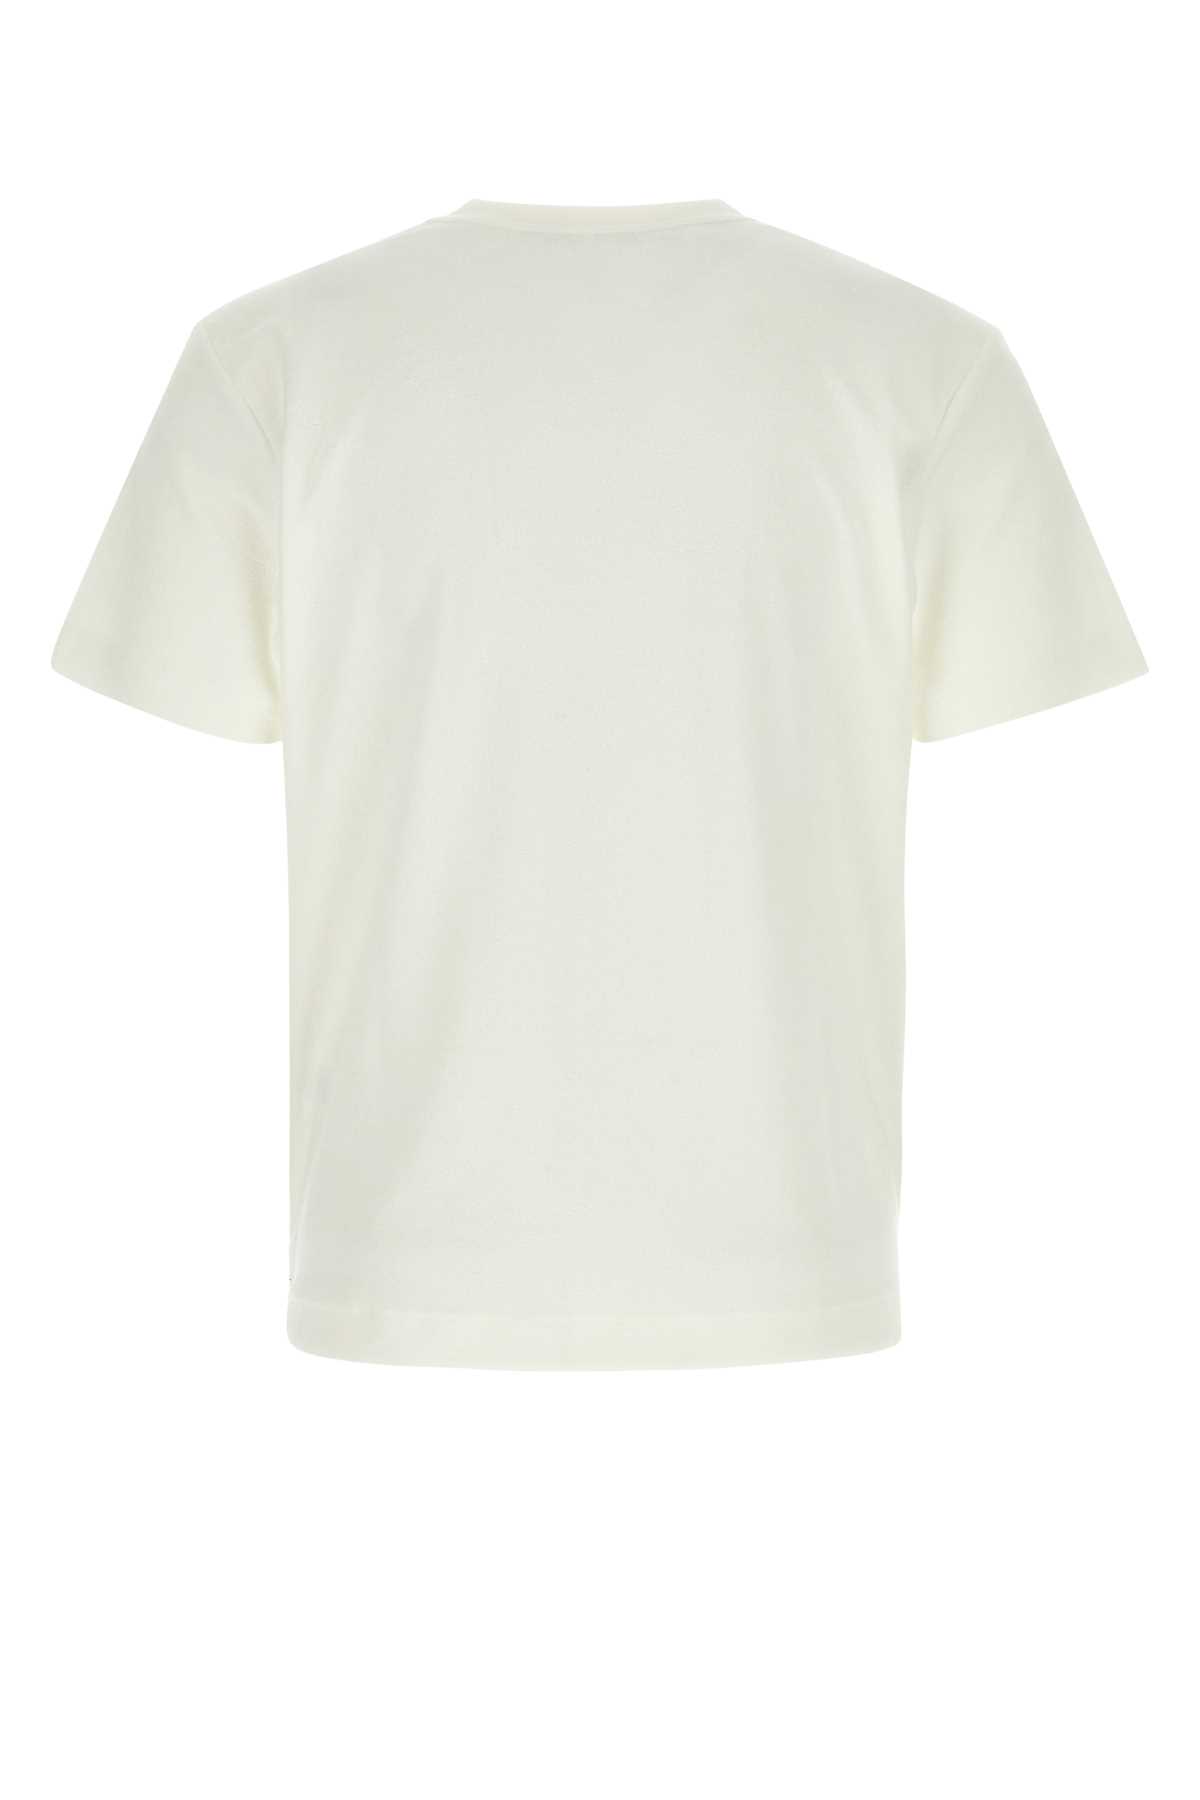 Howlin' White Terry Fons T-shirt In Ecru